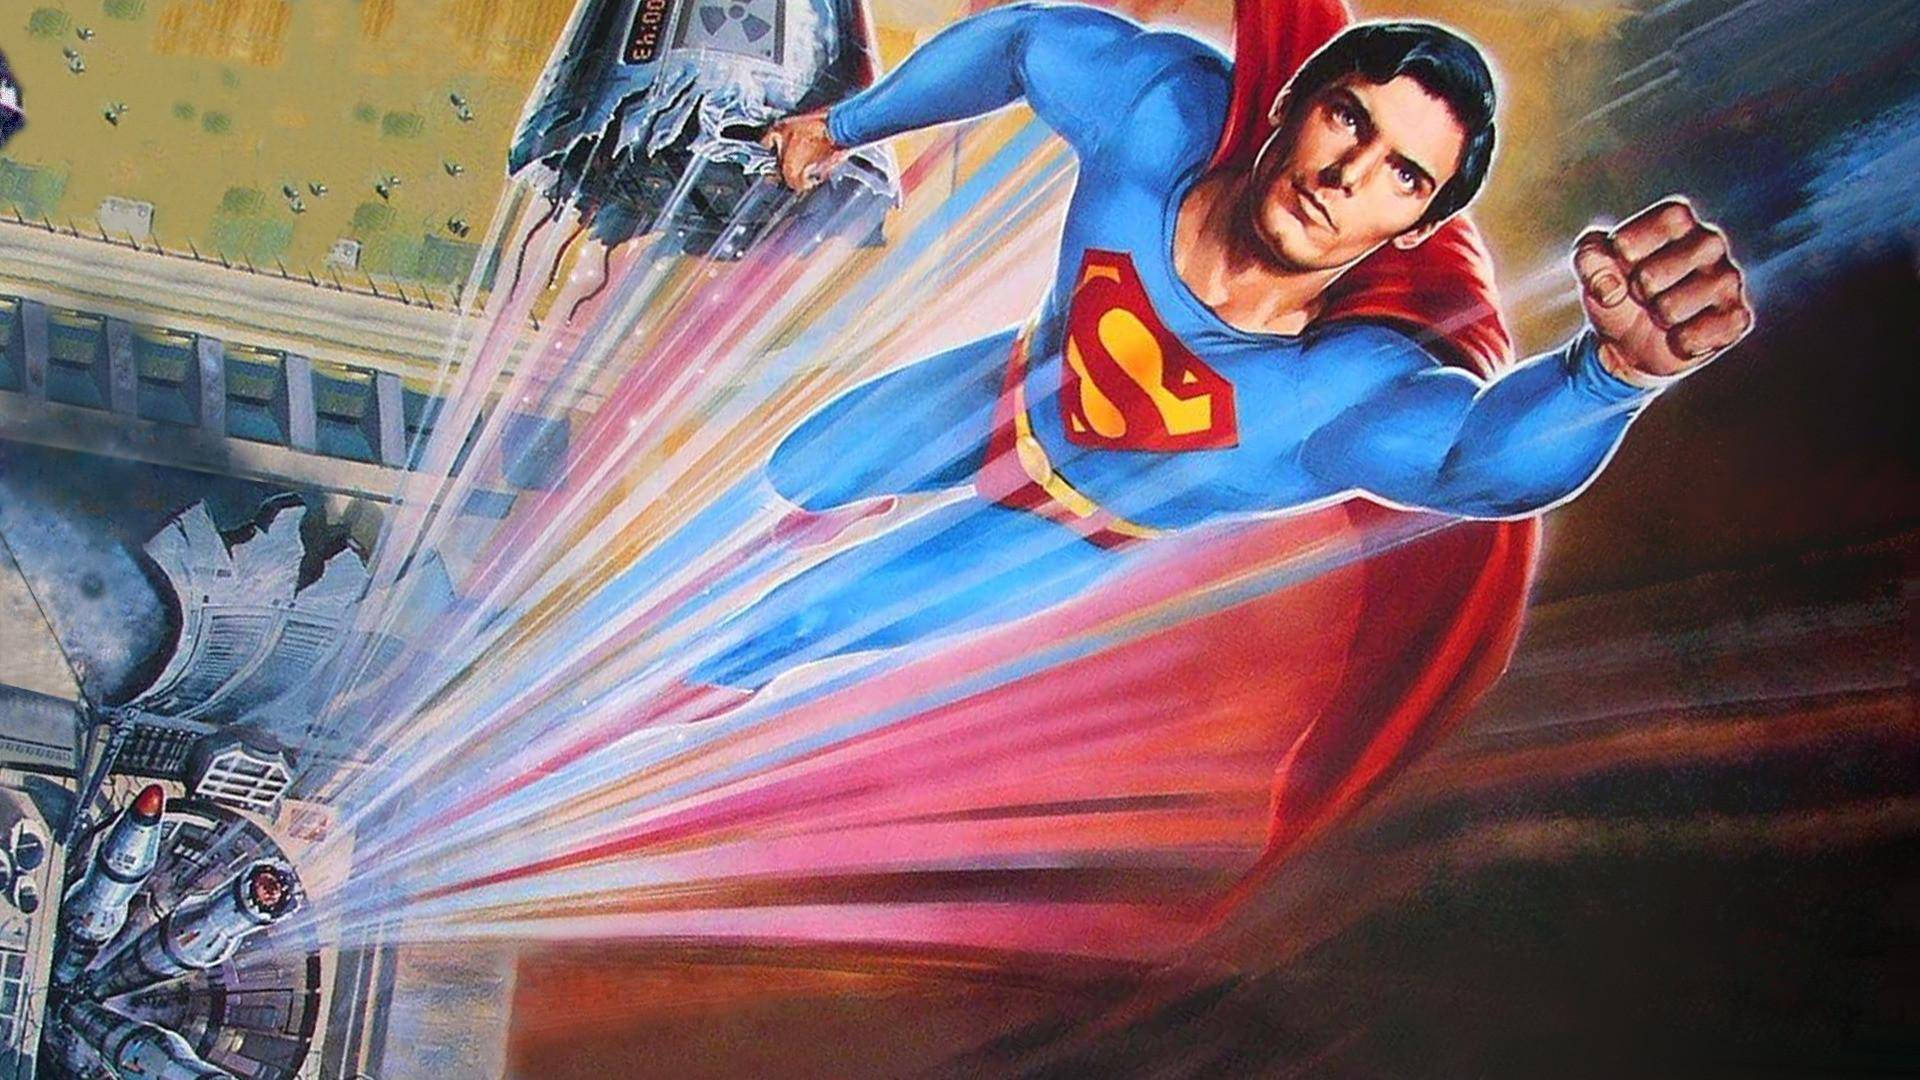 Christopher Reeve Superman Digital Fan Art Wallpaper